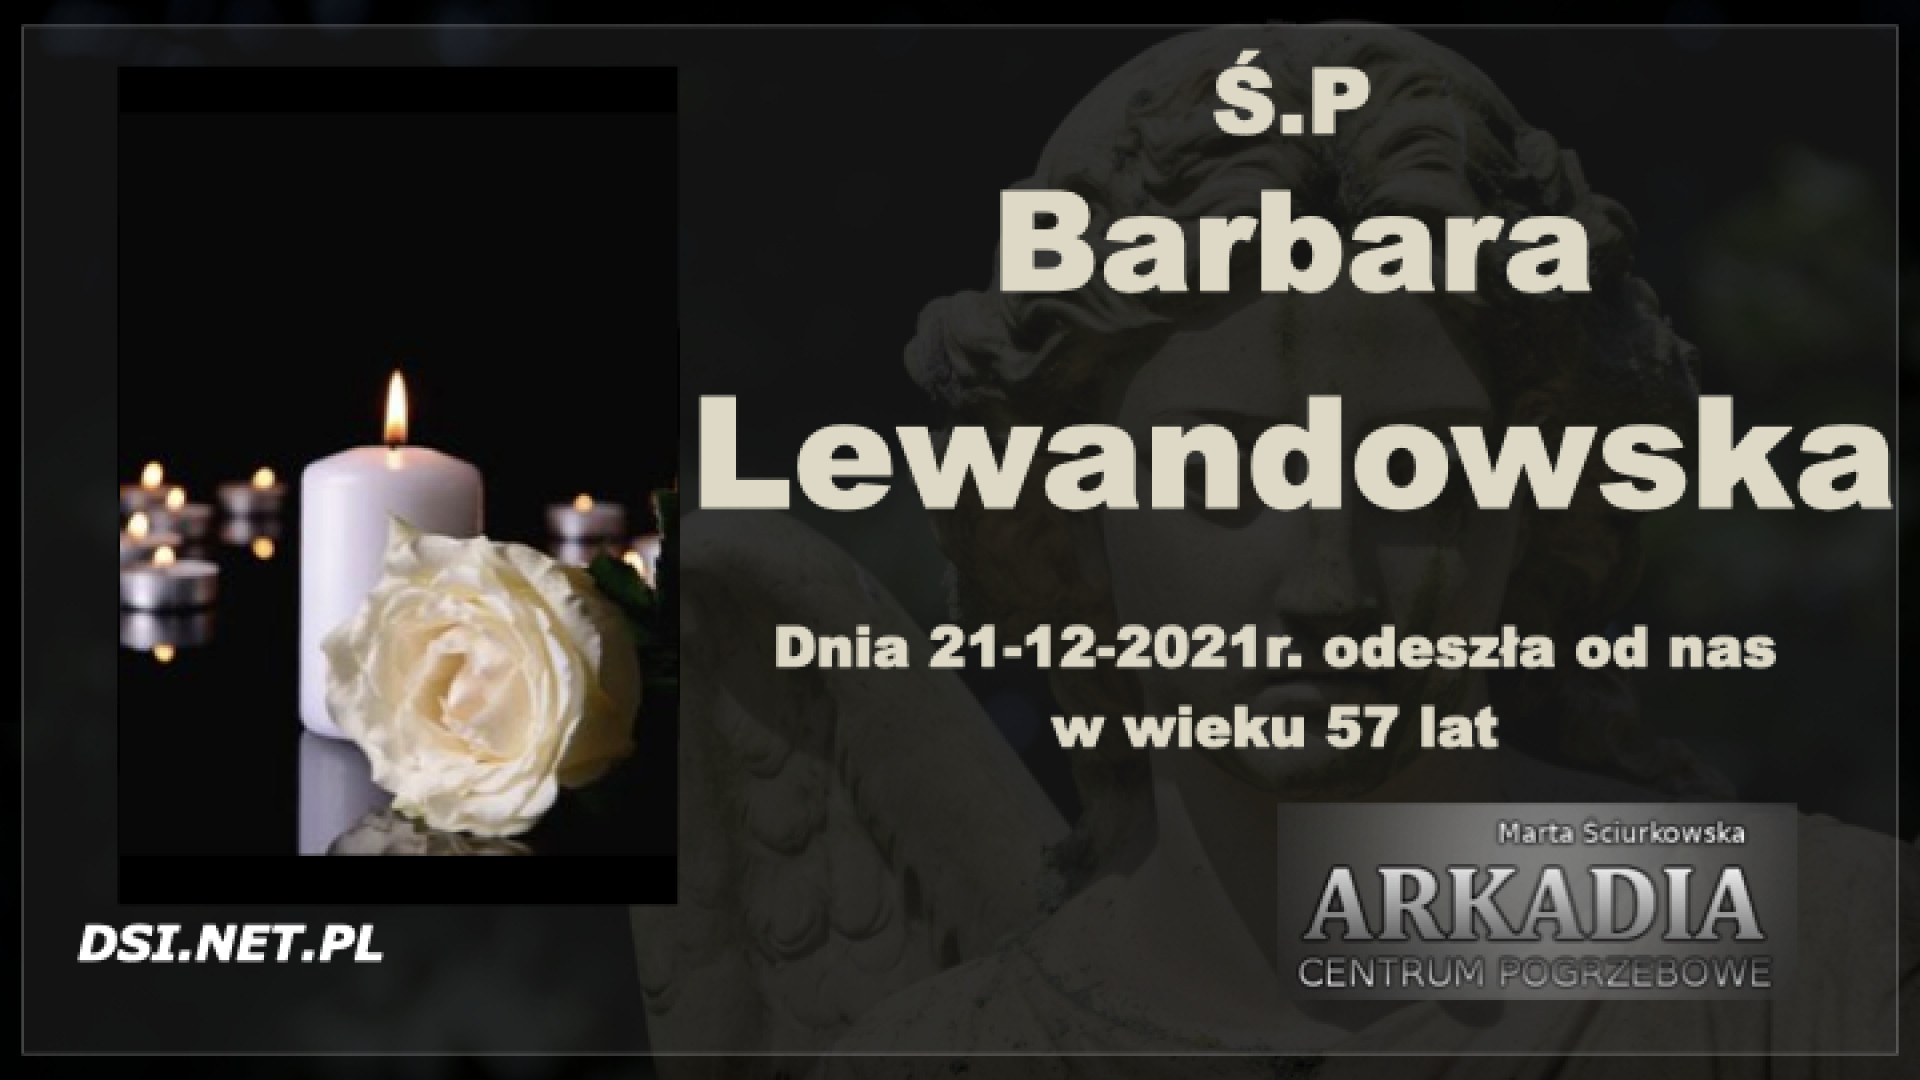 Ś.P. Barbara Lewandowska